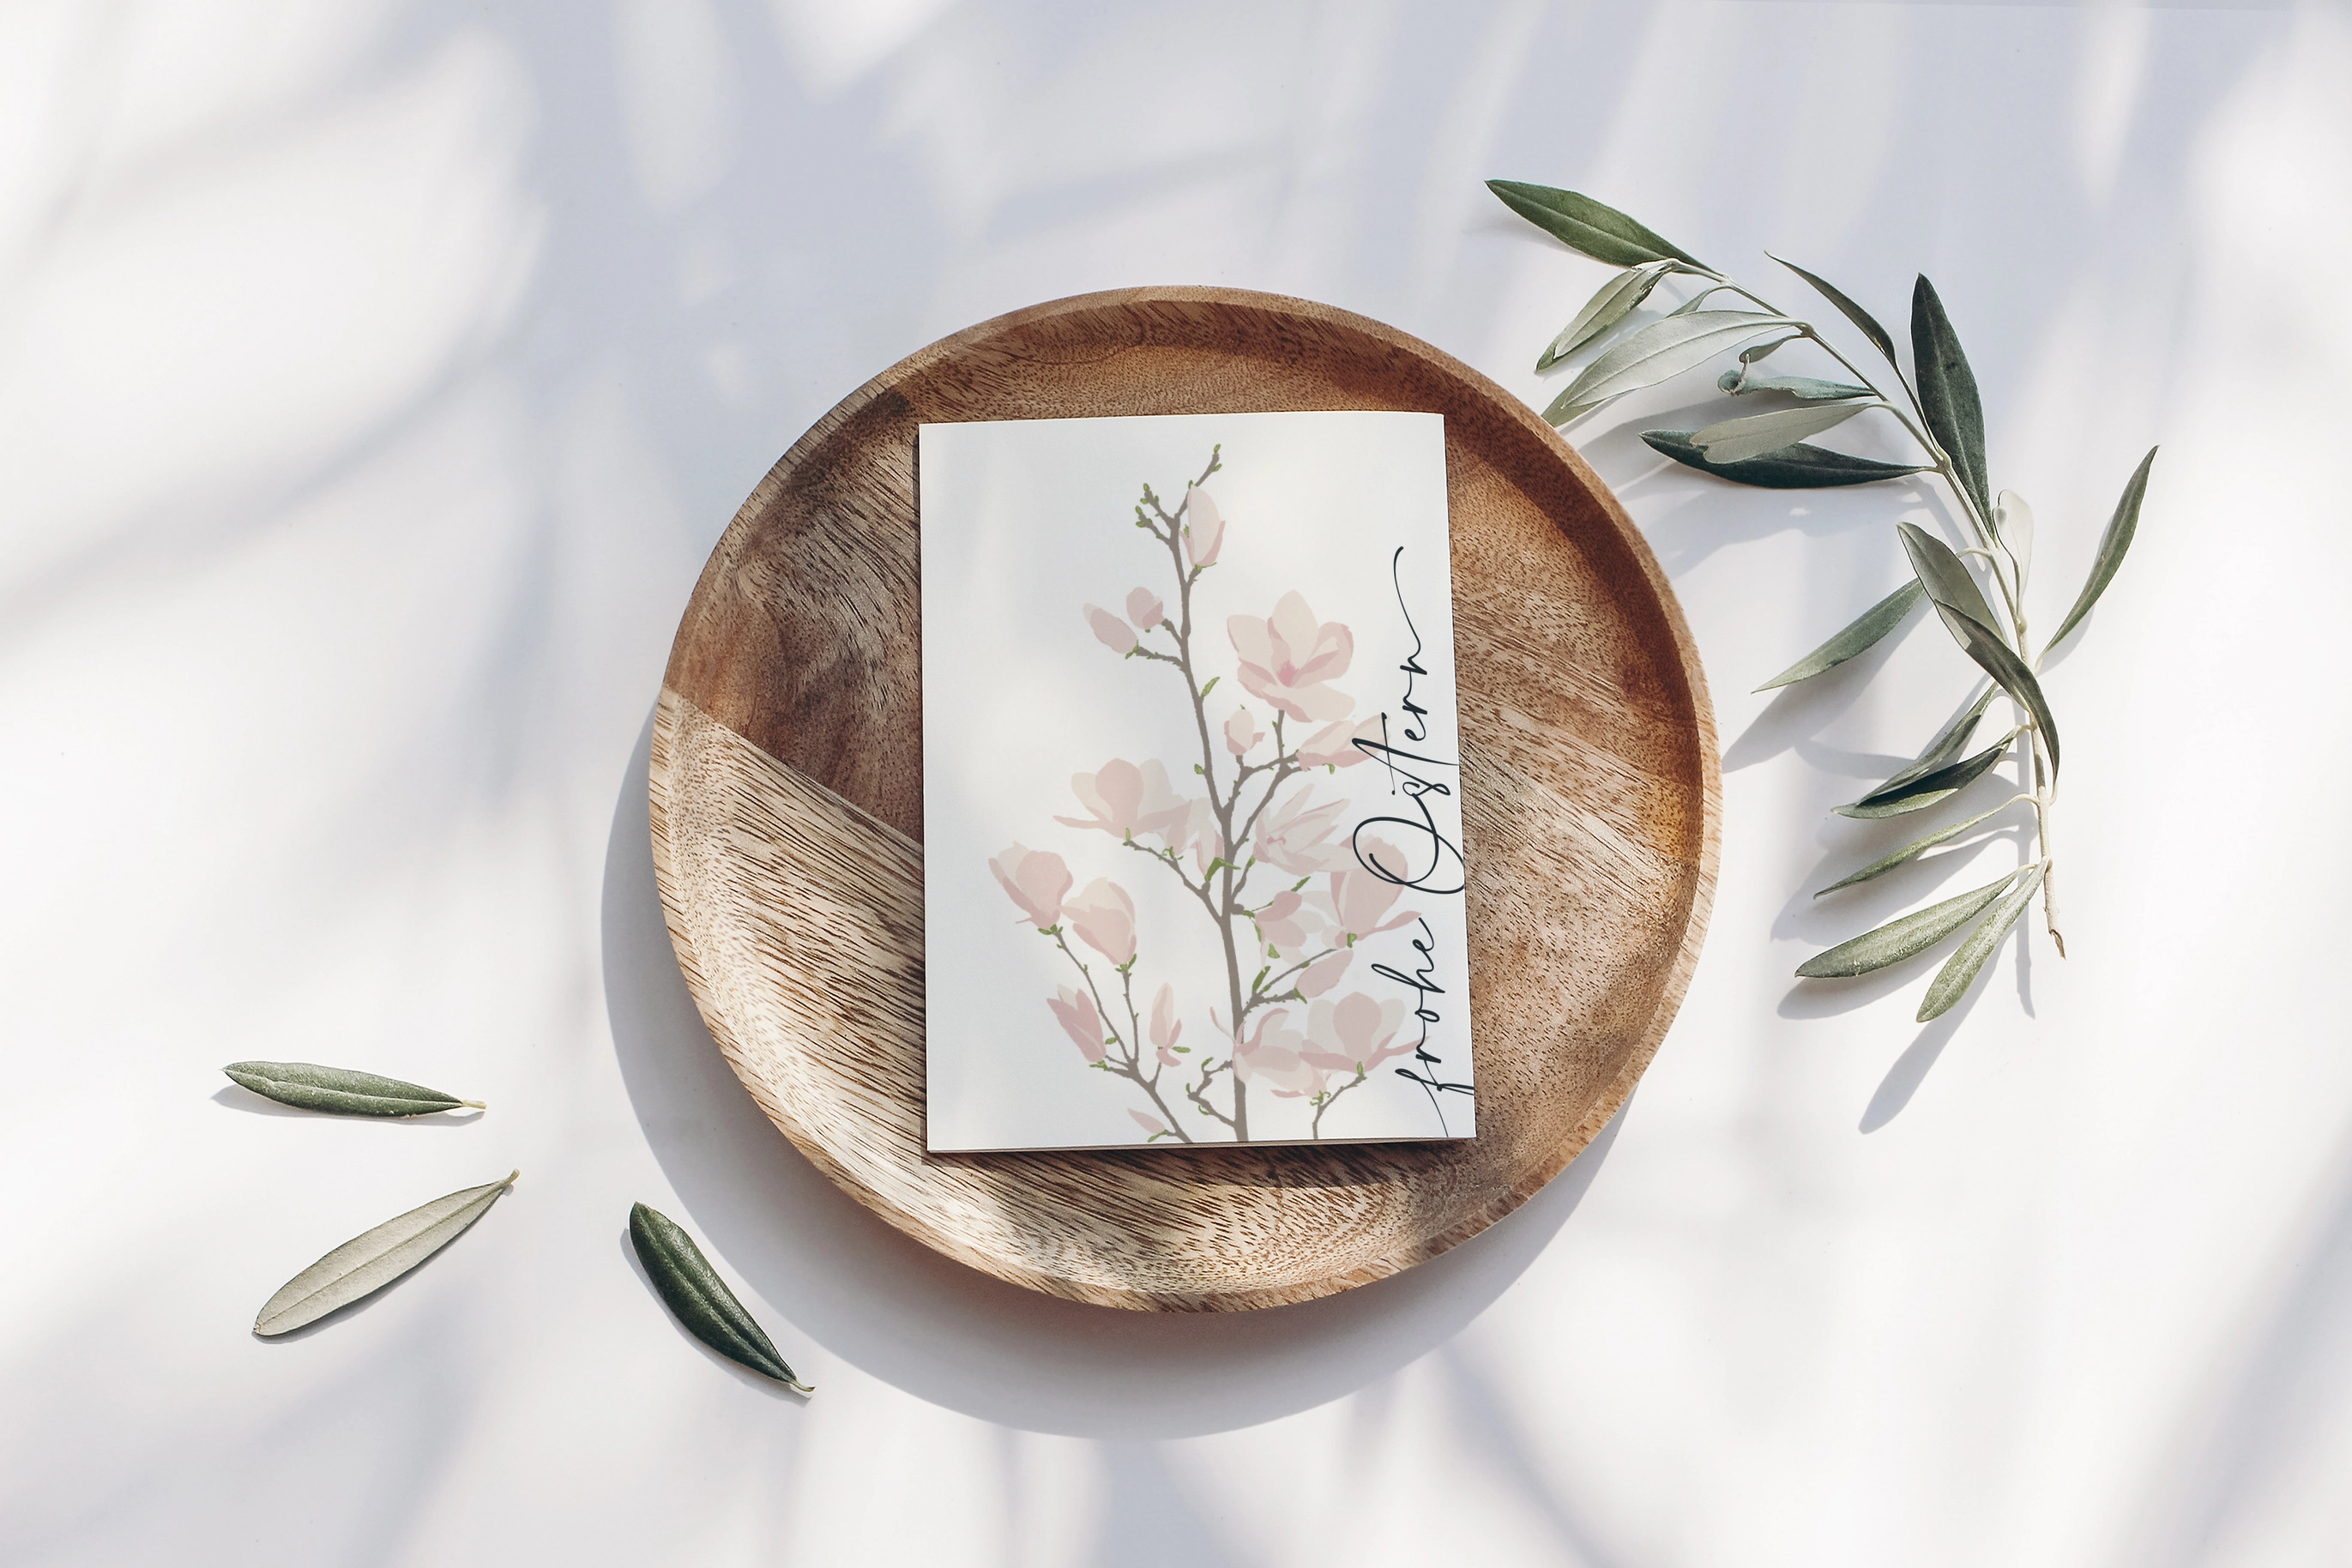 Postkarte Frohe Ostern Magnolien vom Wildblumen Atelier  